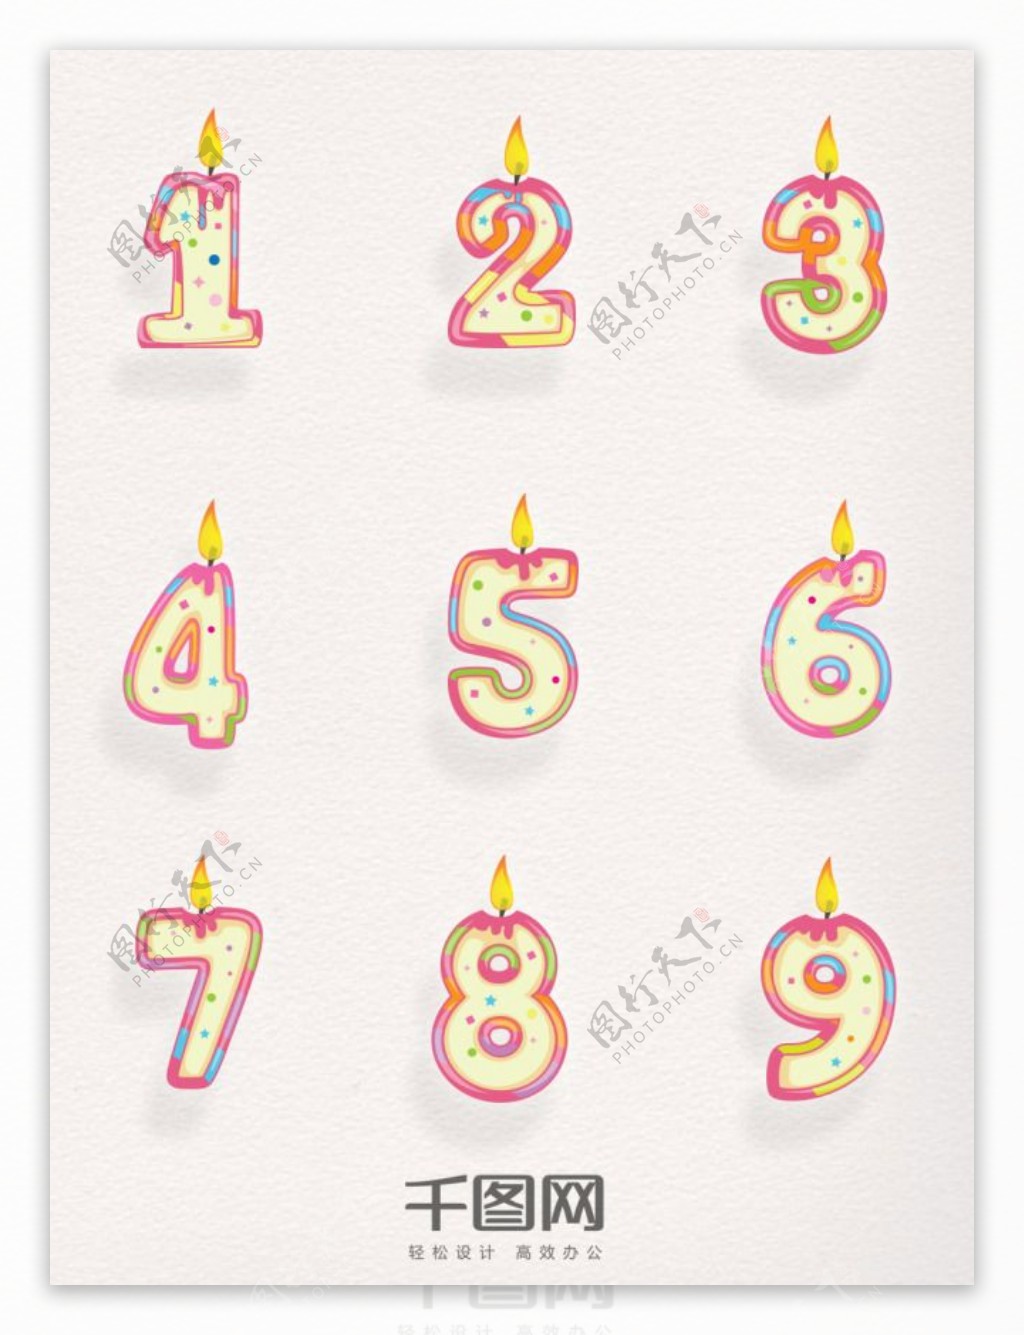 矢量素材生日数字蜡烛元素装饰图案集合